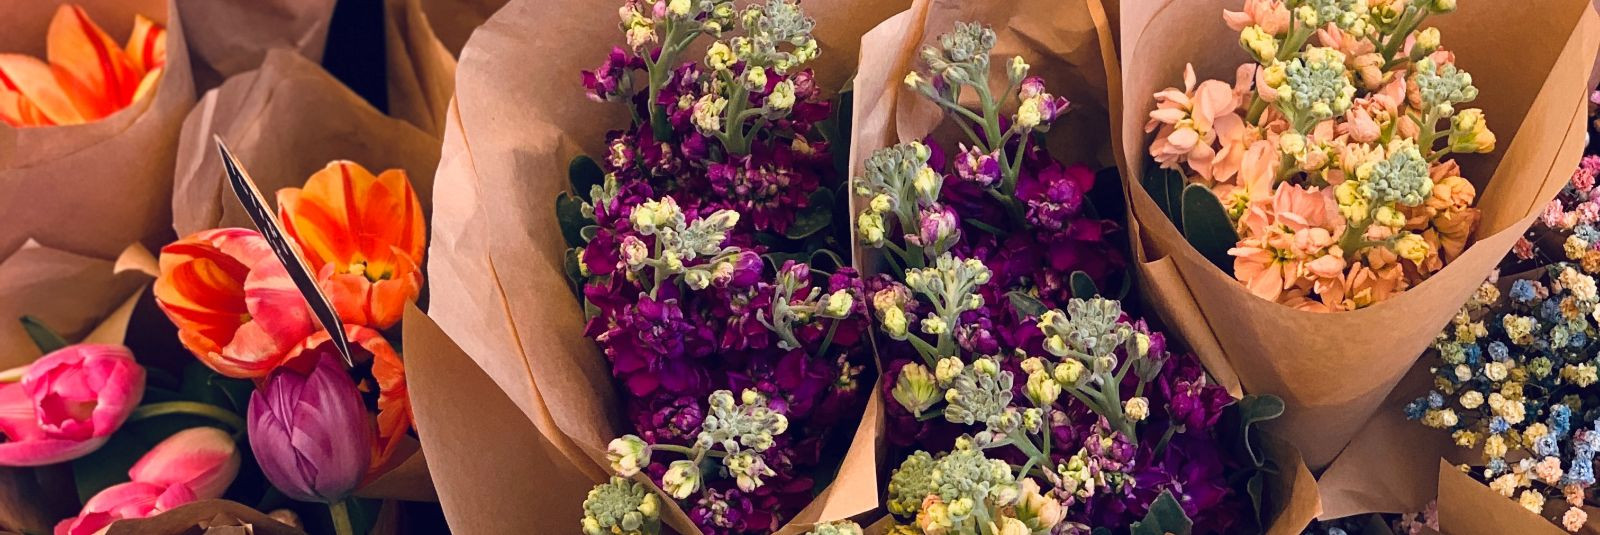 Kumarol Grupp OÜ Lillepood Saare Selveris on suurepärane valik kvaliteetsete lillede ja lilleteenuste otsijatele Saaremaal. Meie lillepood pakub suurt valikut l